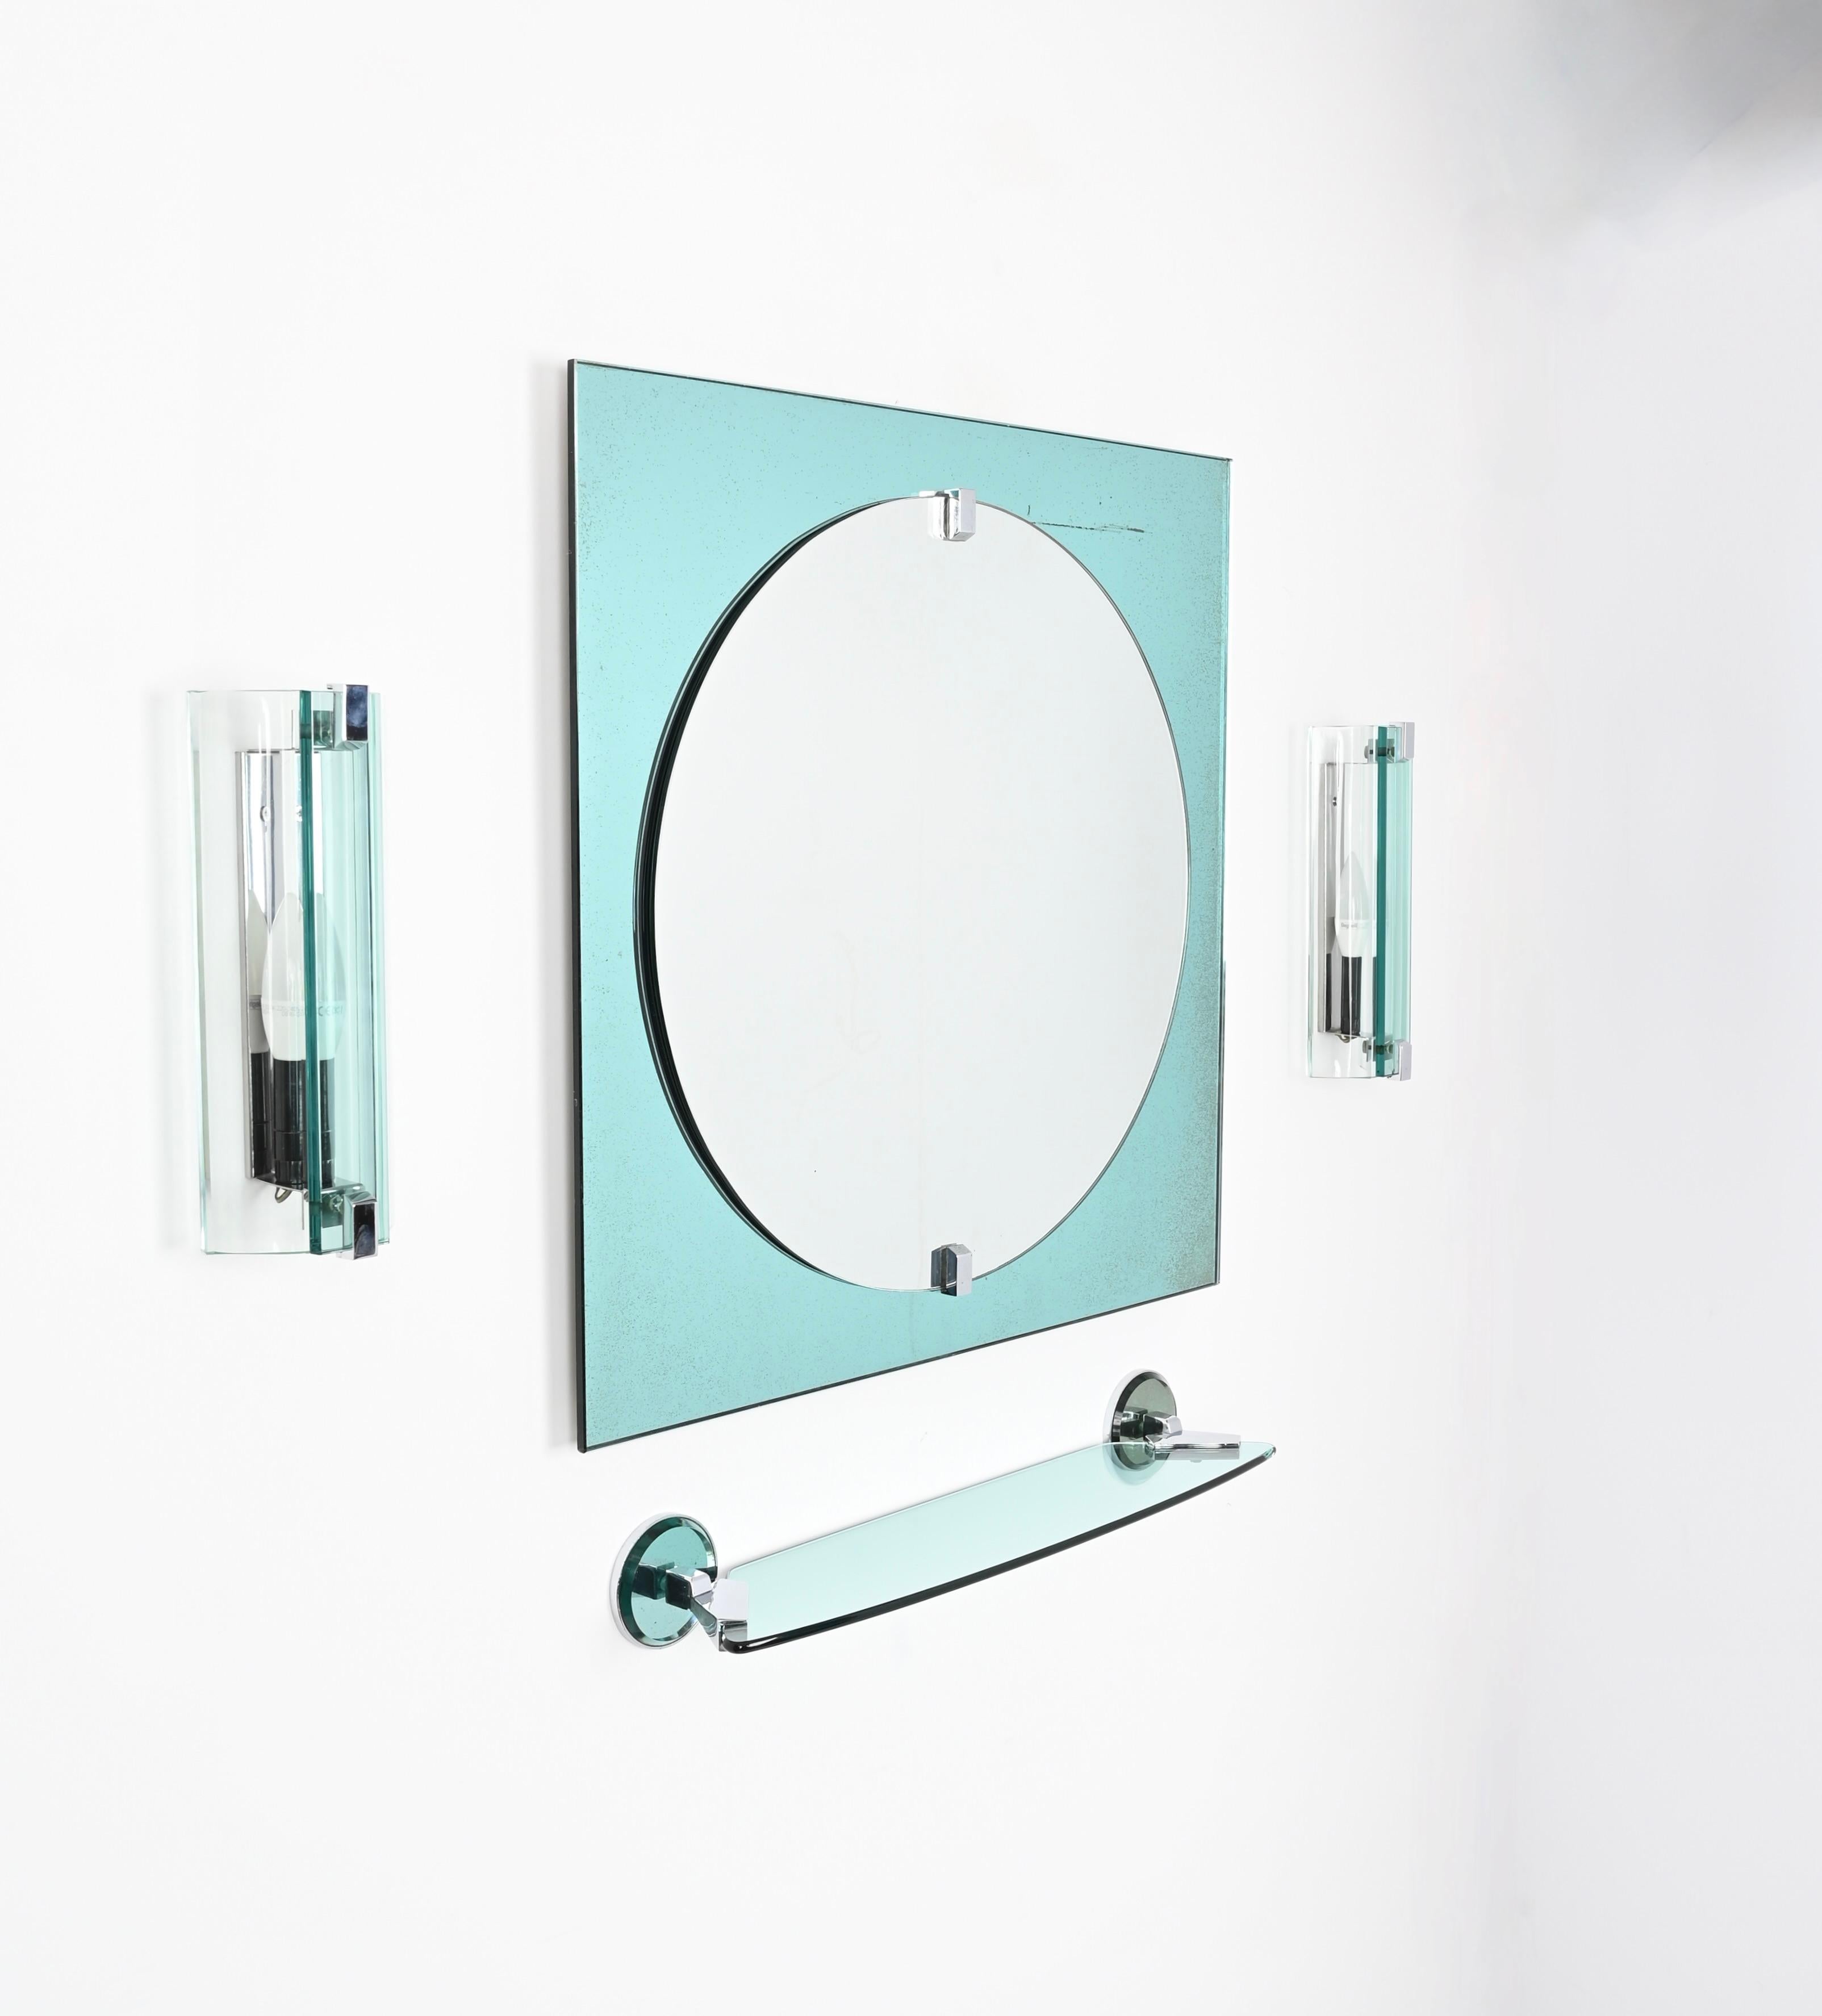 Wunderschönes italienisches Badezimmerset aus tiffanyblauem Kunstglas und verchromtem Stahl mit einem quadratischen Spiegel, zwei Wandleuchtern und einem Wandregal. Diese fantastischen Artikel wurden in den 1970er Jahren von VECA in Italien